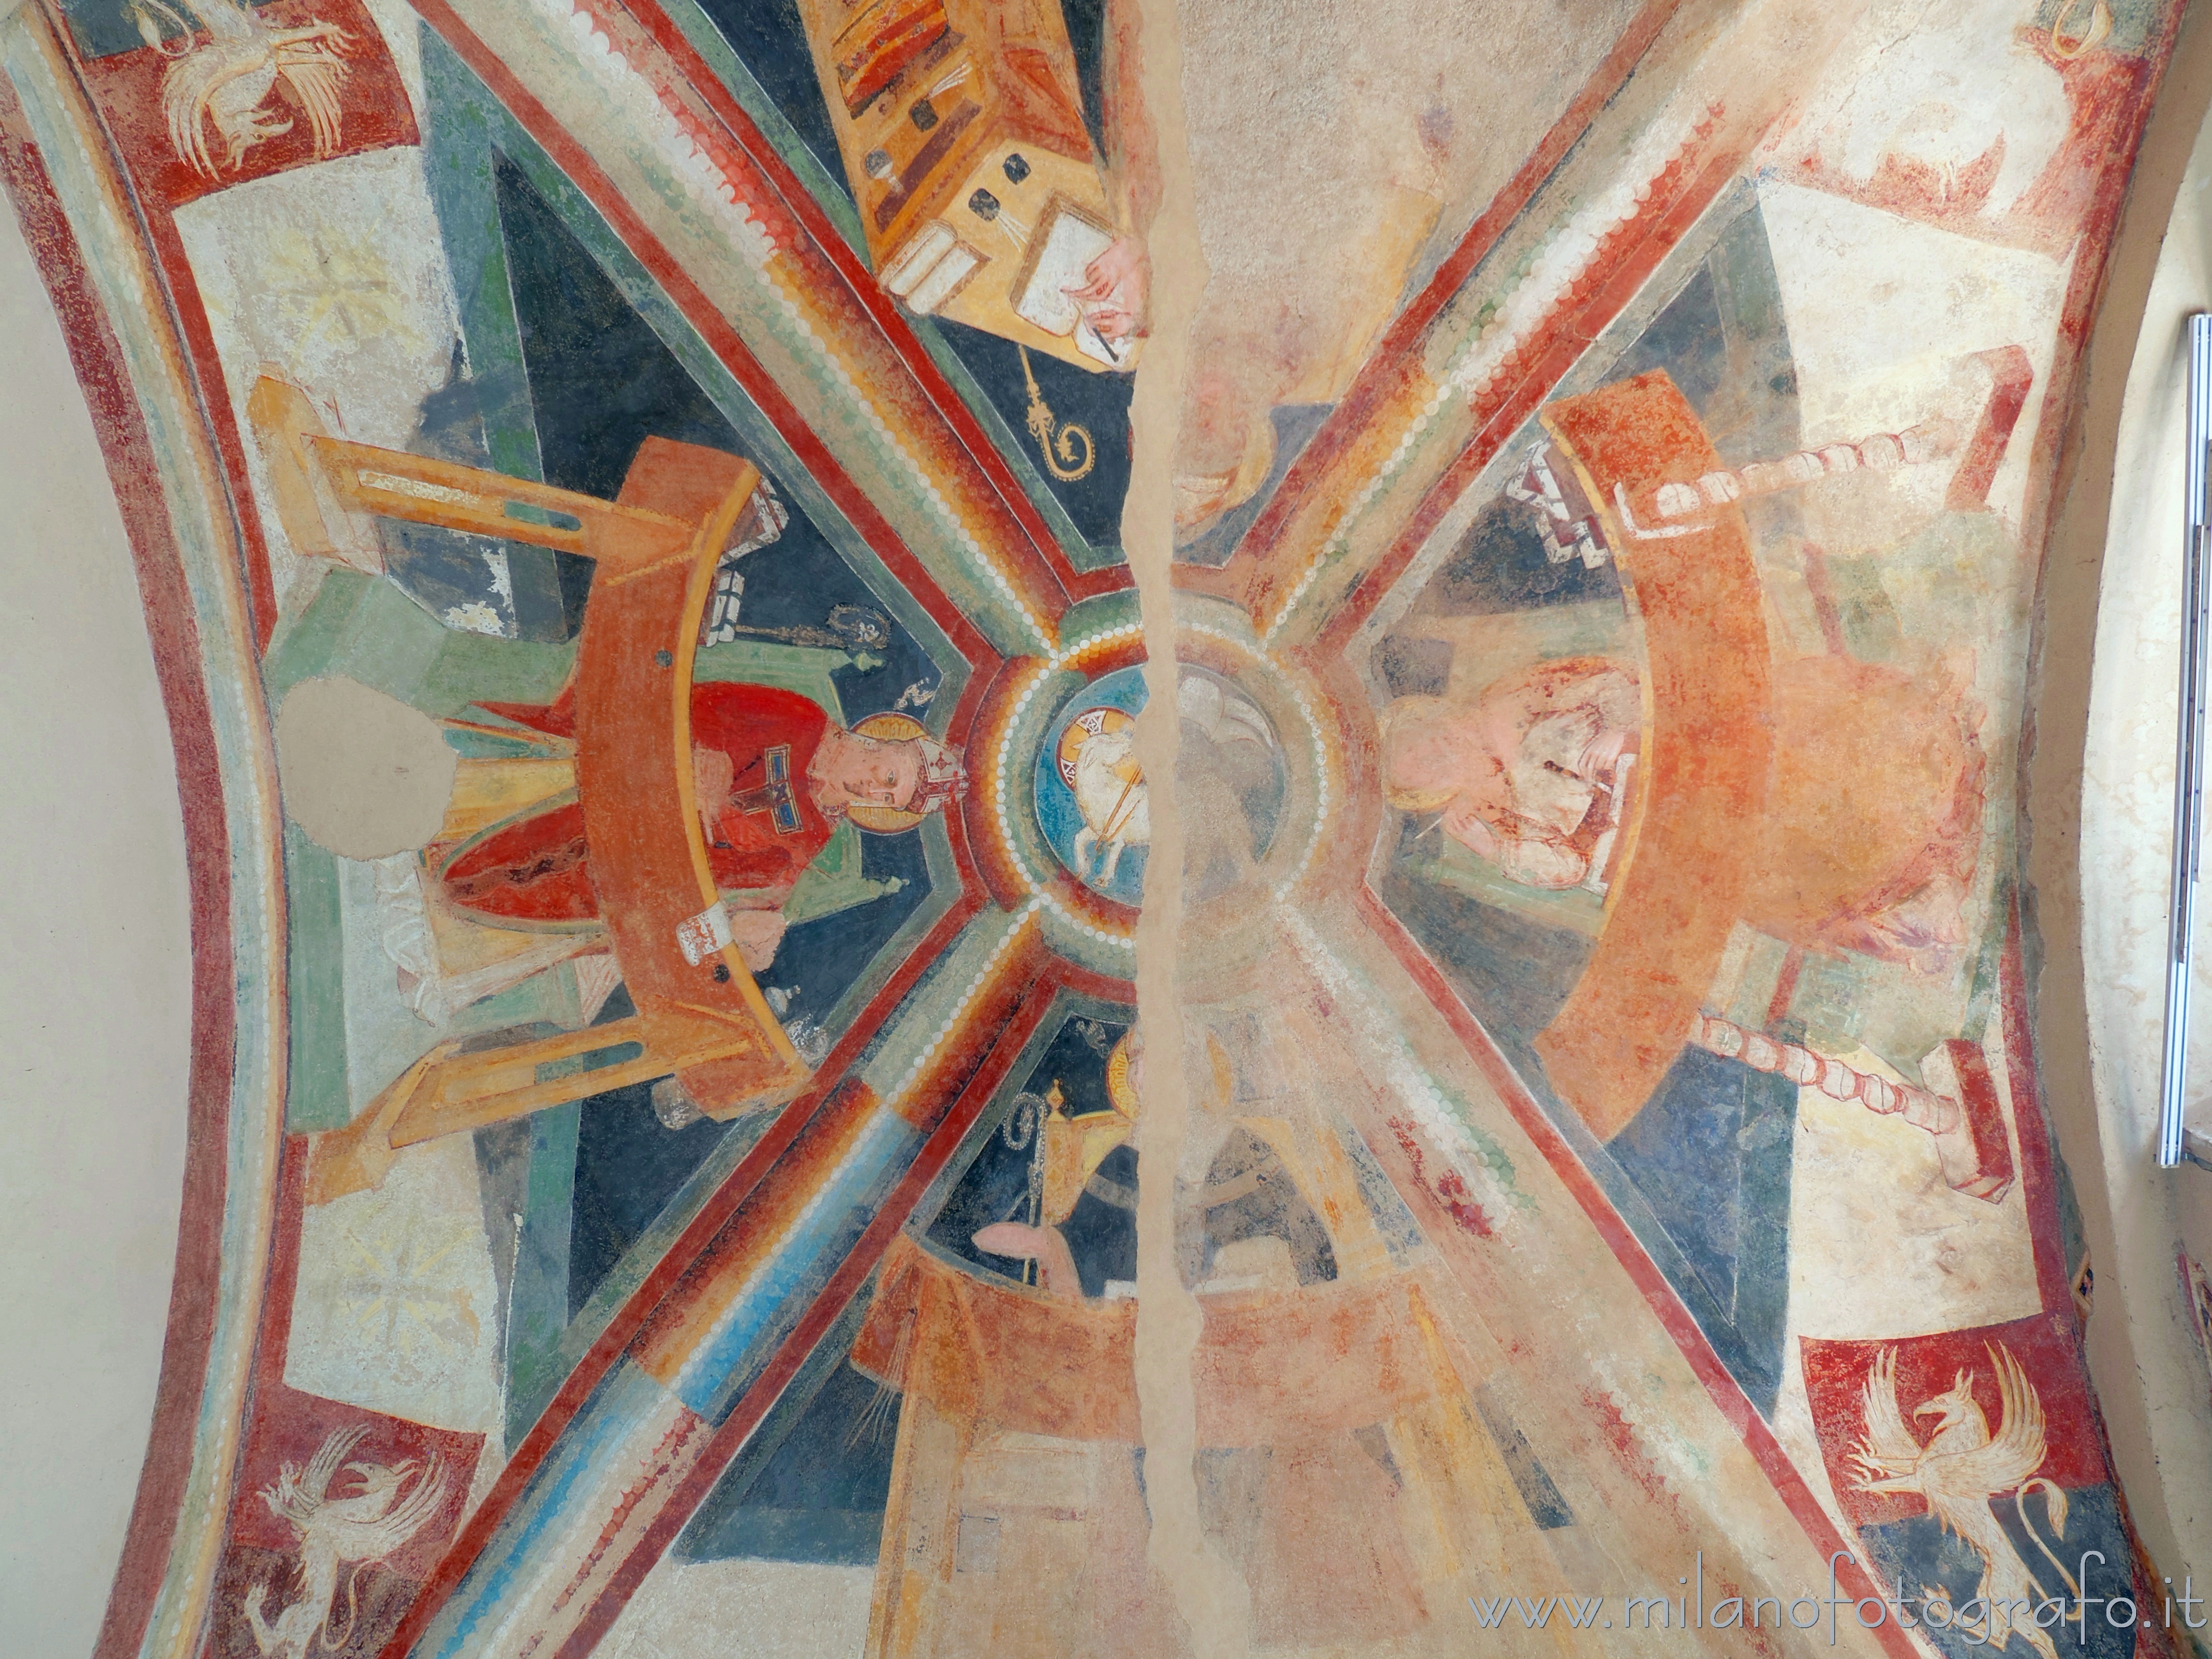 Vimercate (Monza e Brianza): Affreschi trecenteschi sul soffitto della sagrestia della Chiesa di Santo Stefano - Vimercate (Monza e Brianza)